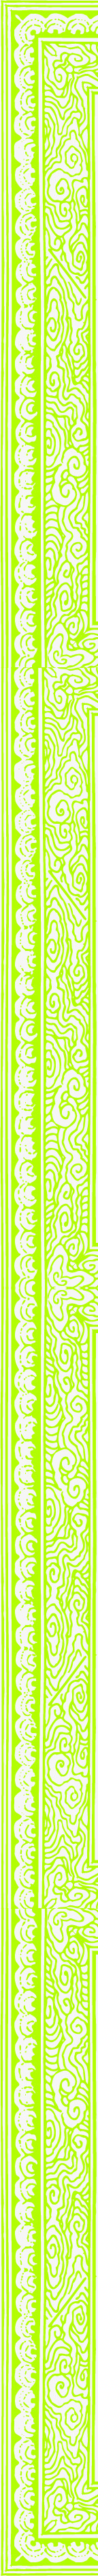 绿色镂空花纹剪纸素材